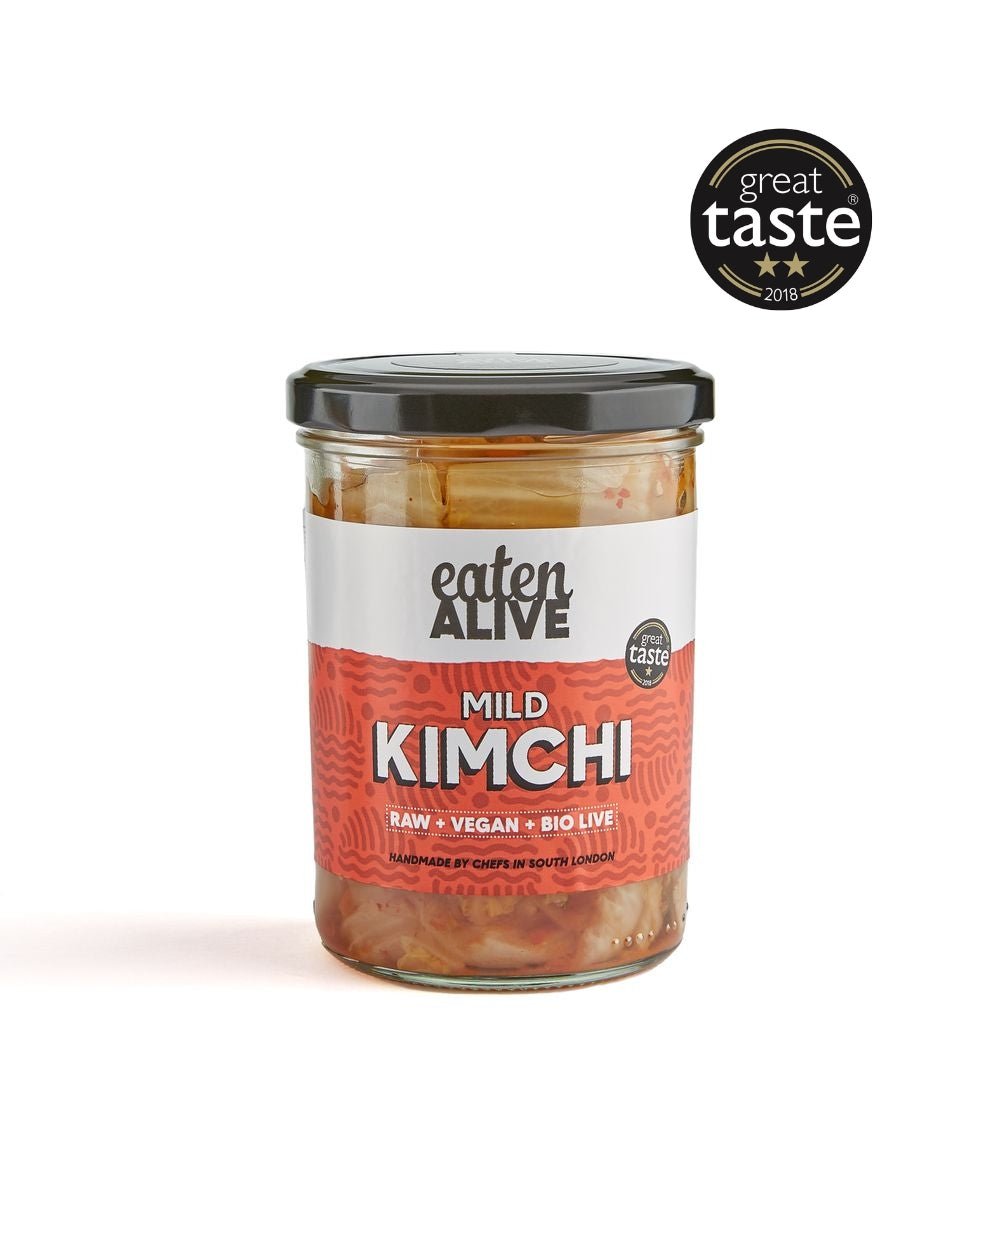 Mild Kimchi - eaten-alive